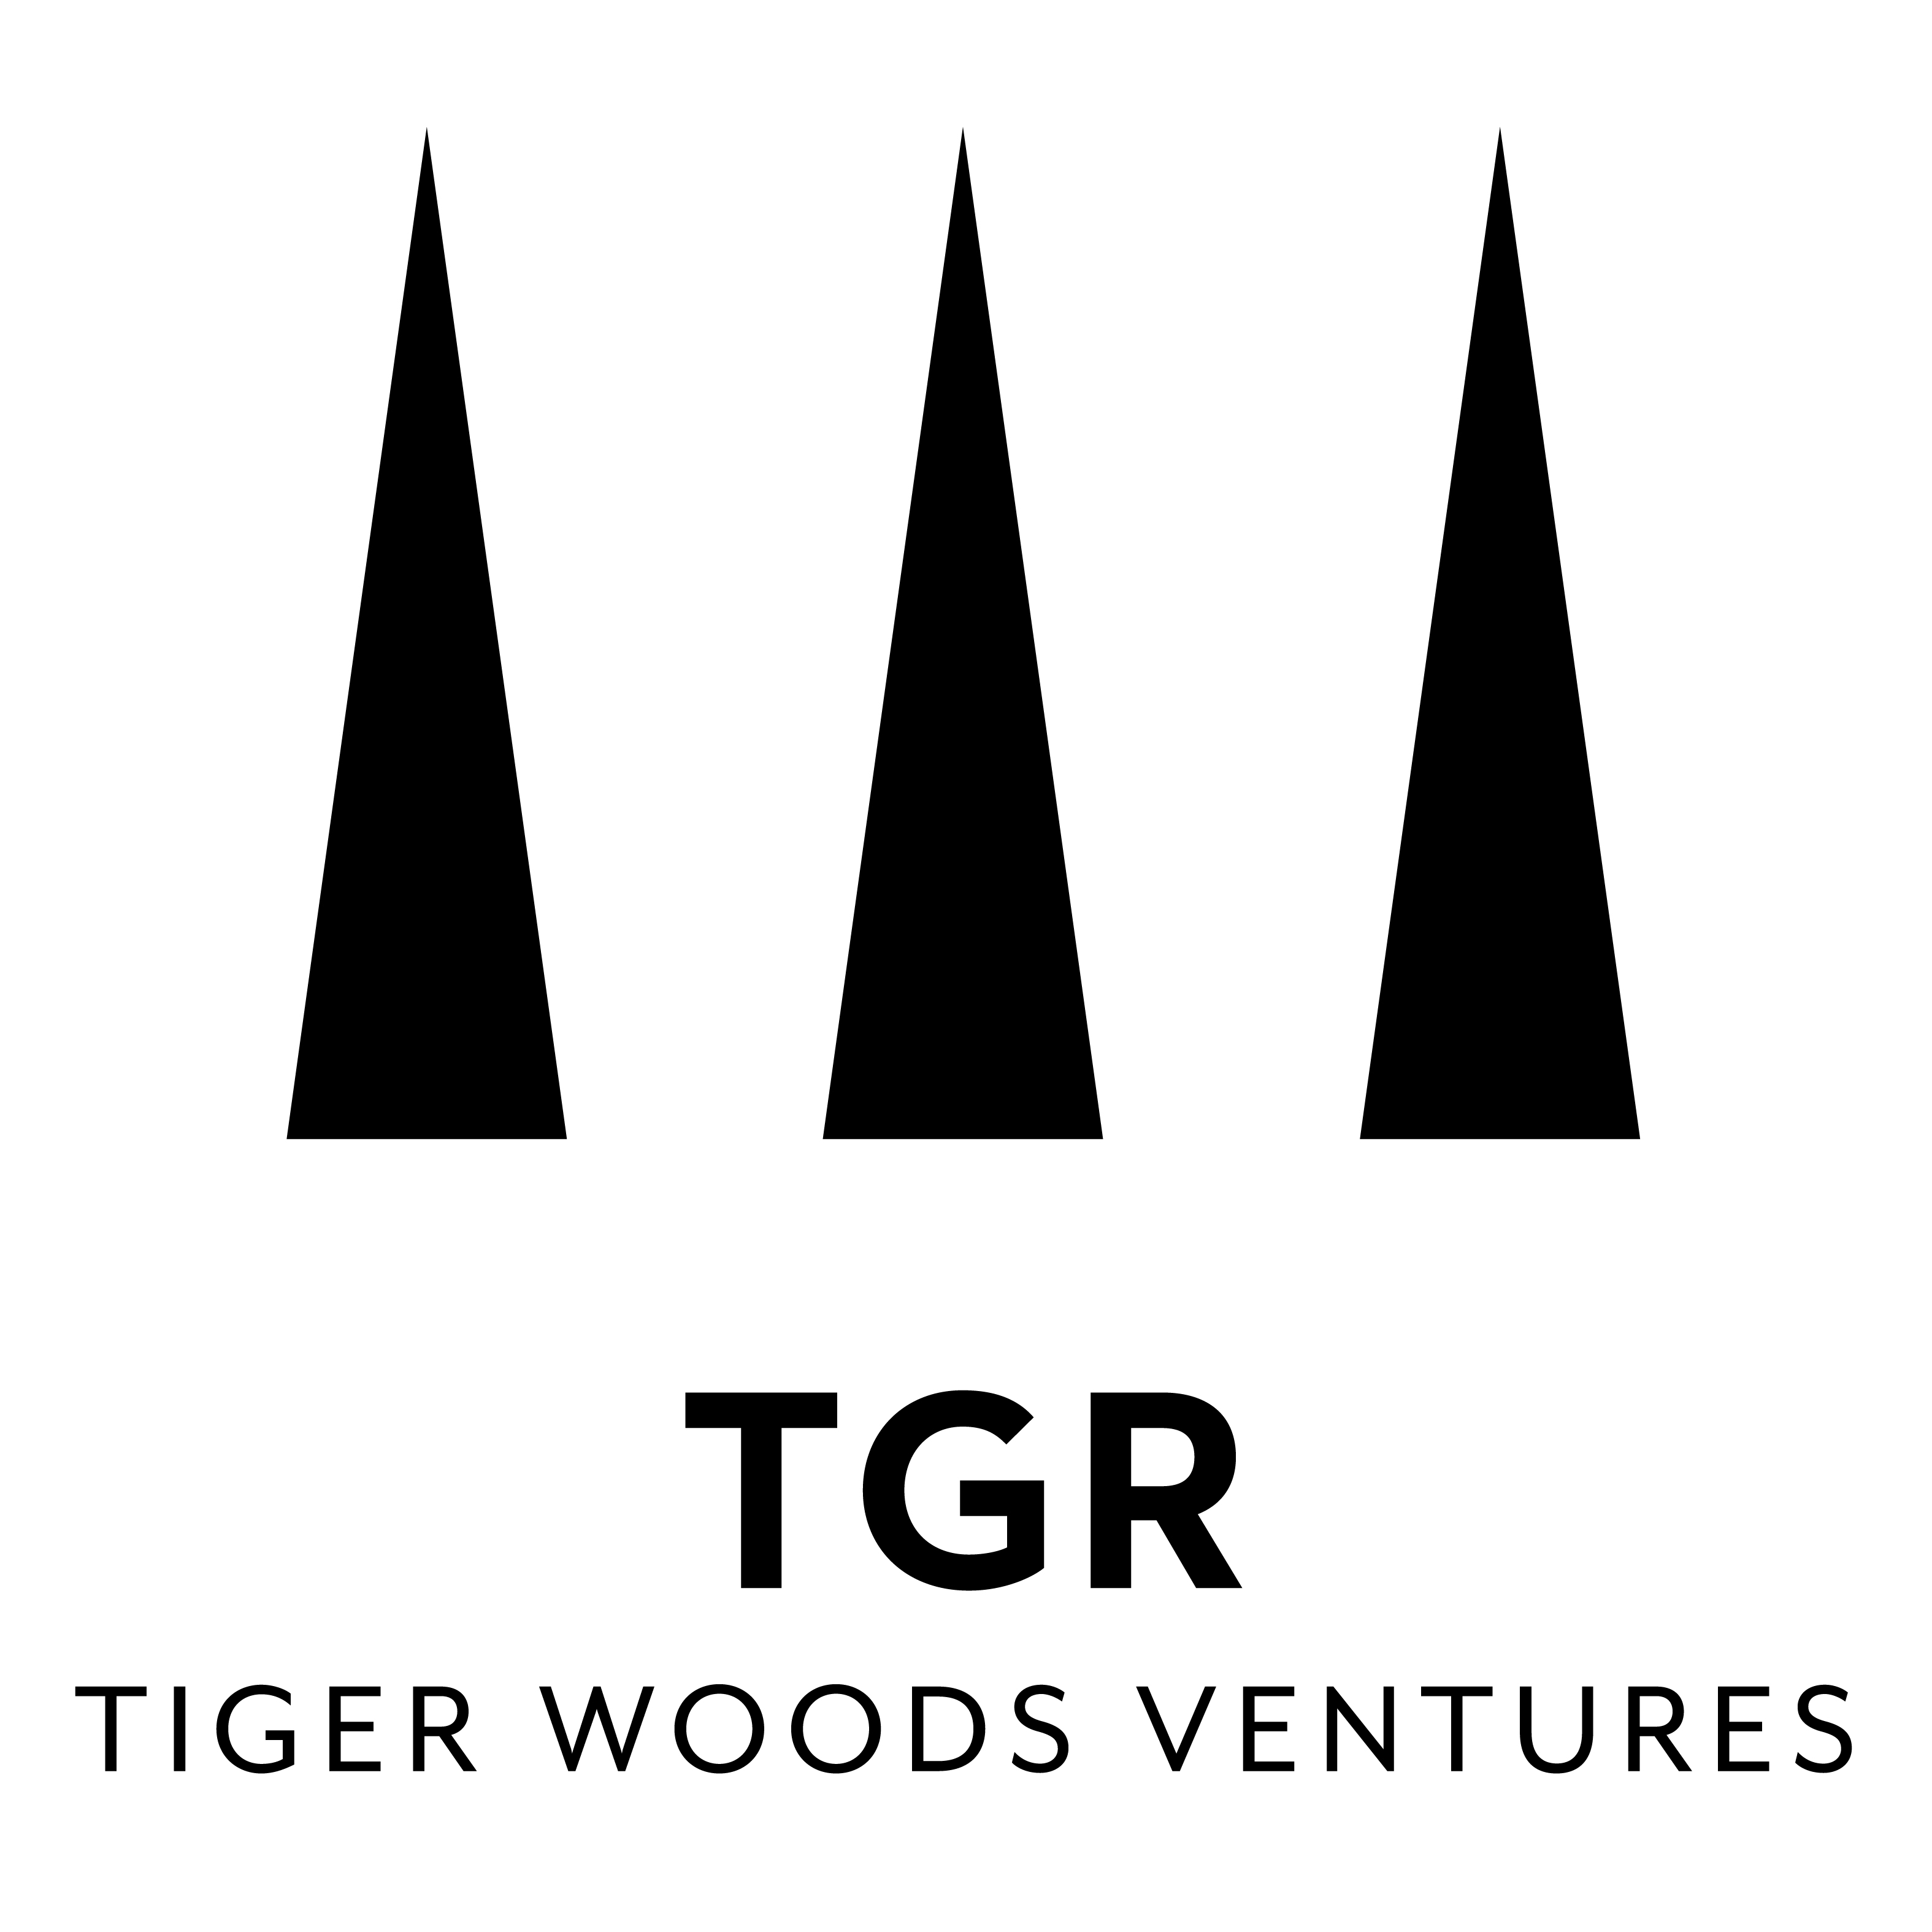 TGR Tiger Woods Ventures